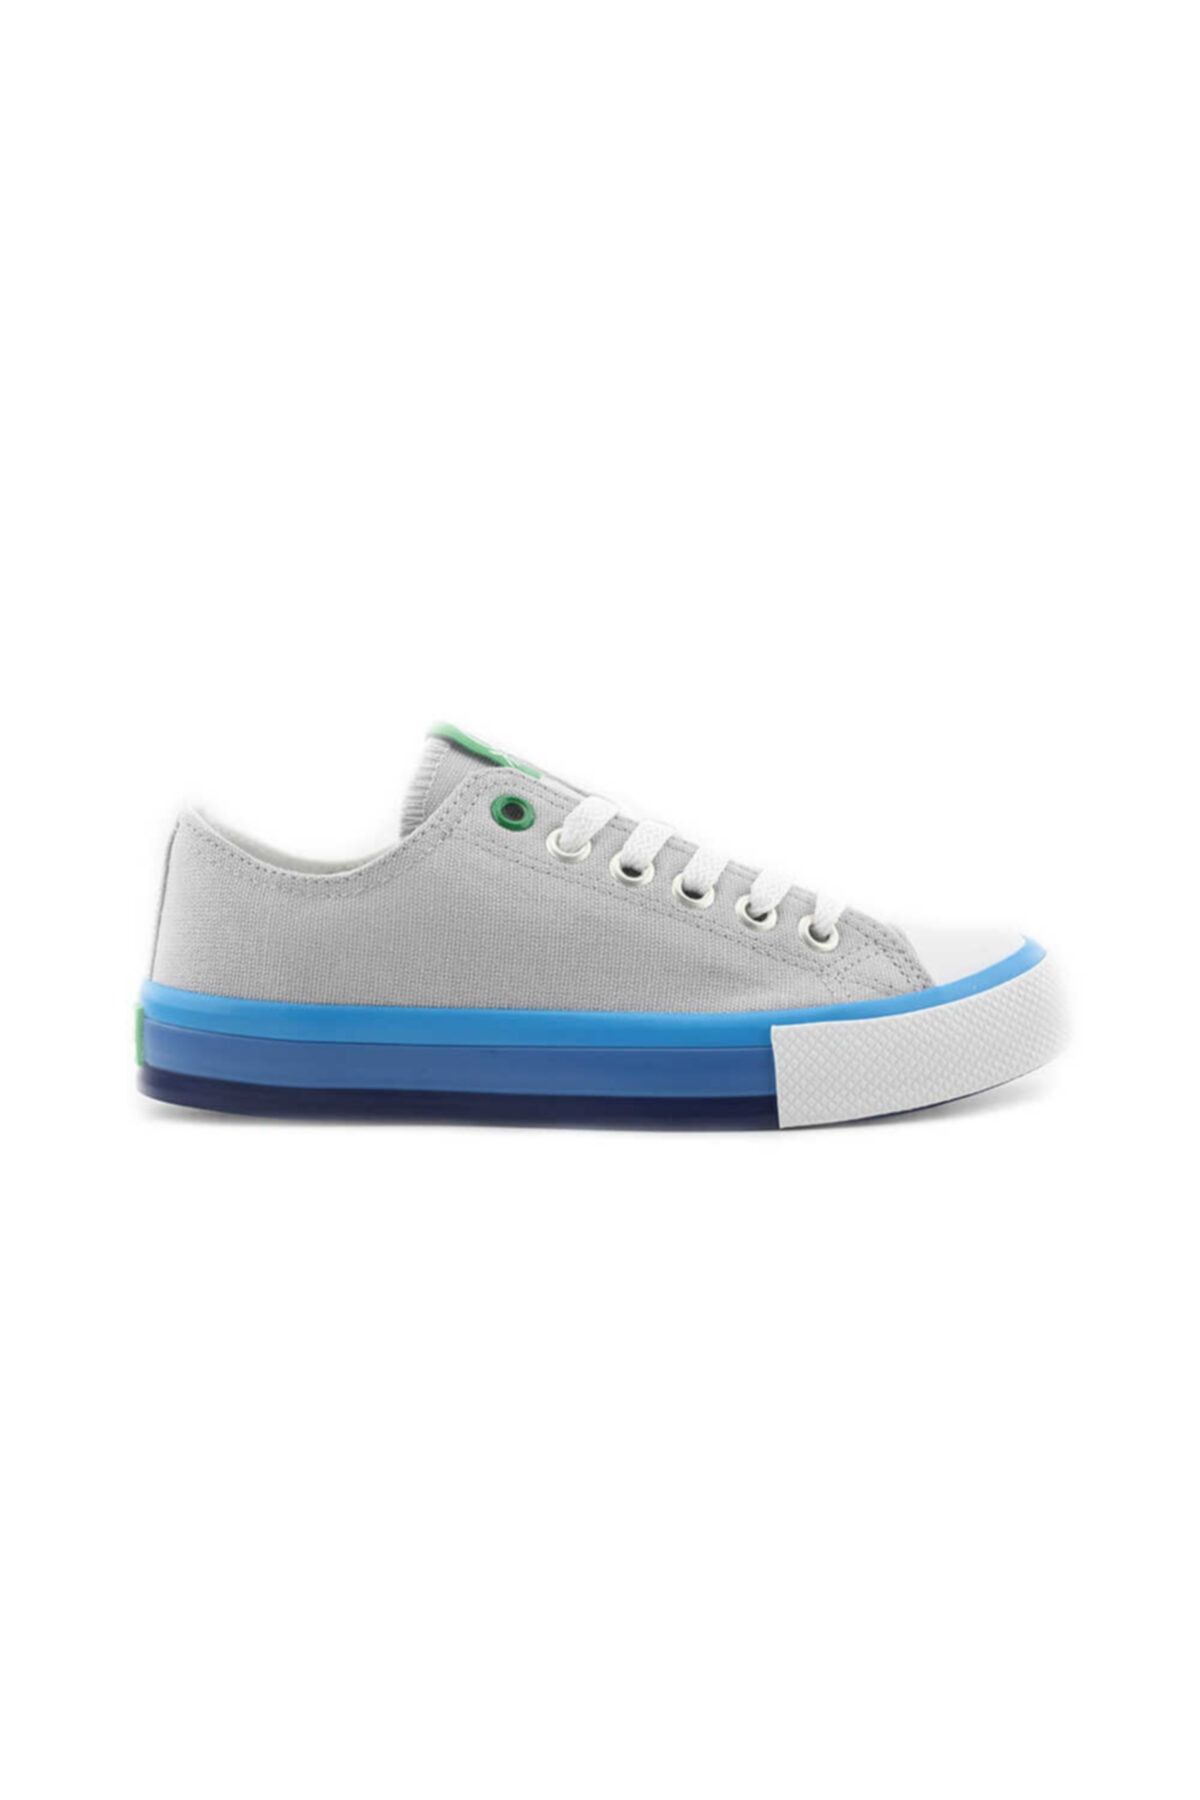 United Colors of Benetton Kadın Spor Ayakkabısı-gri